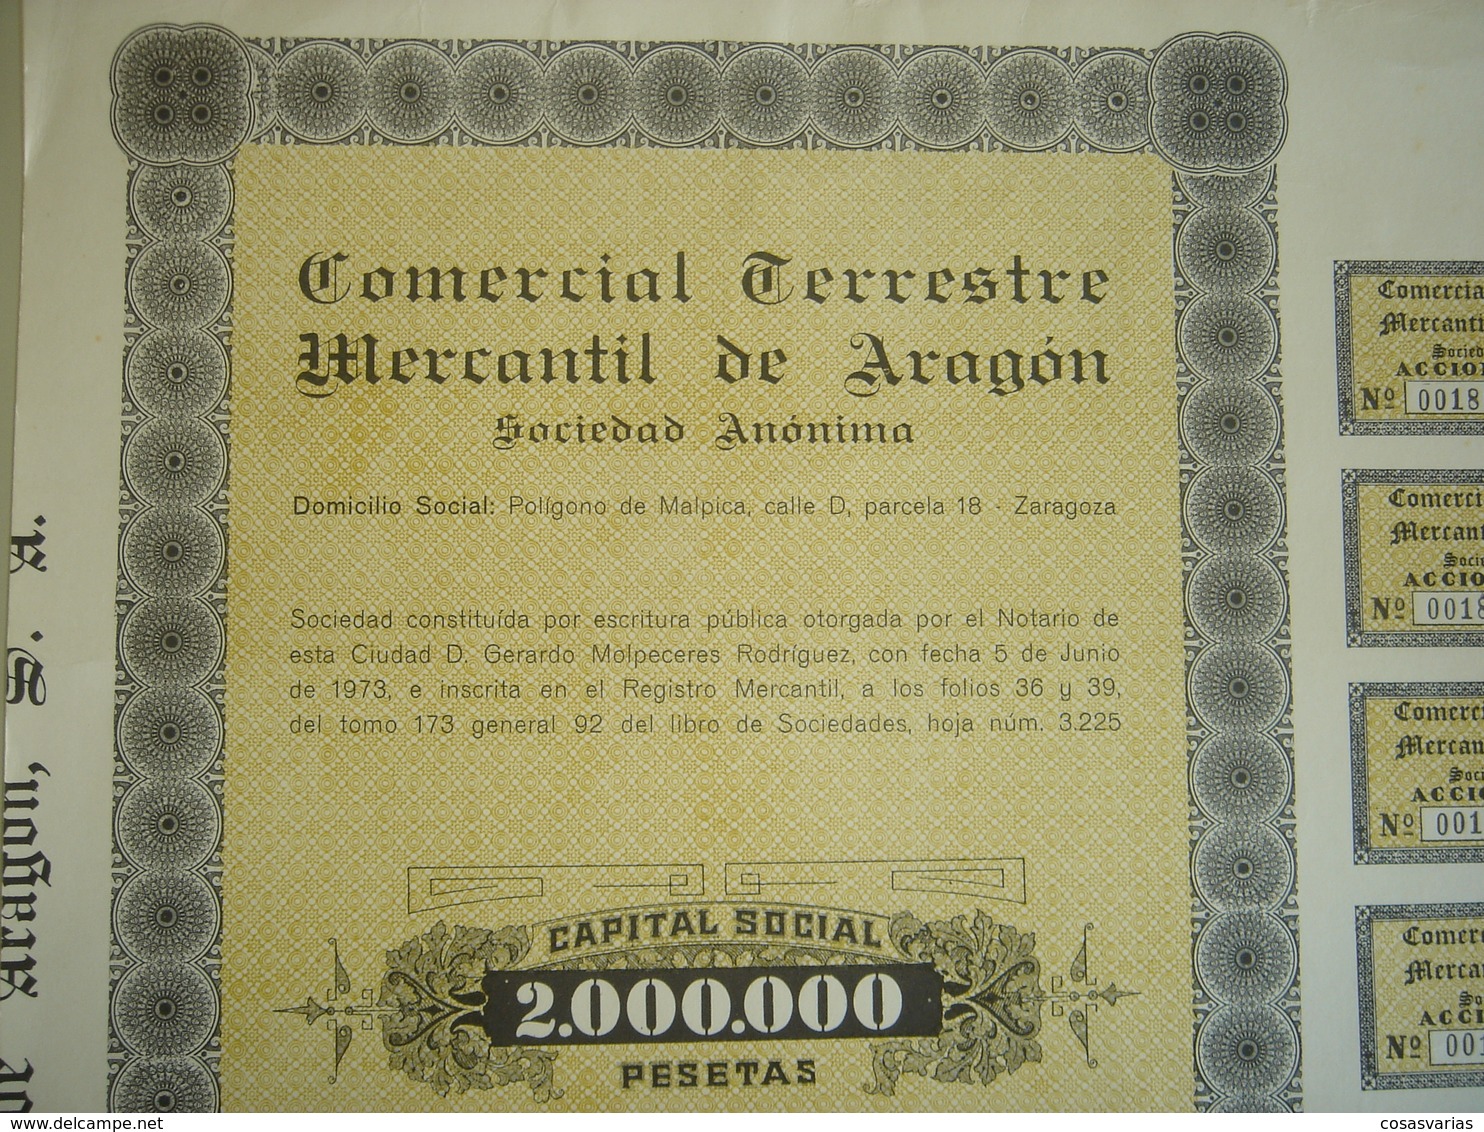 COMERCIAL TERRESTRE MERCANTIL ARAGÓN - Acción 1000 Pesetas - Zaragoza, 5 Junio 1974 - OriginalACTION AKTION - Transport